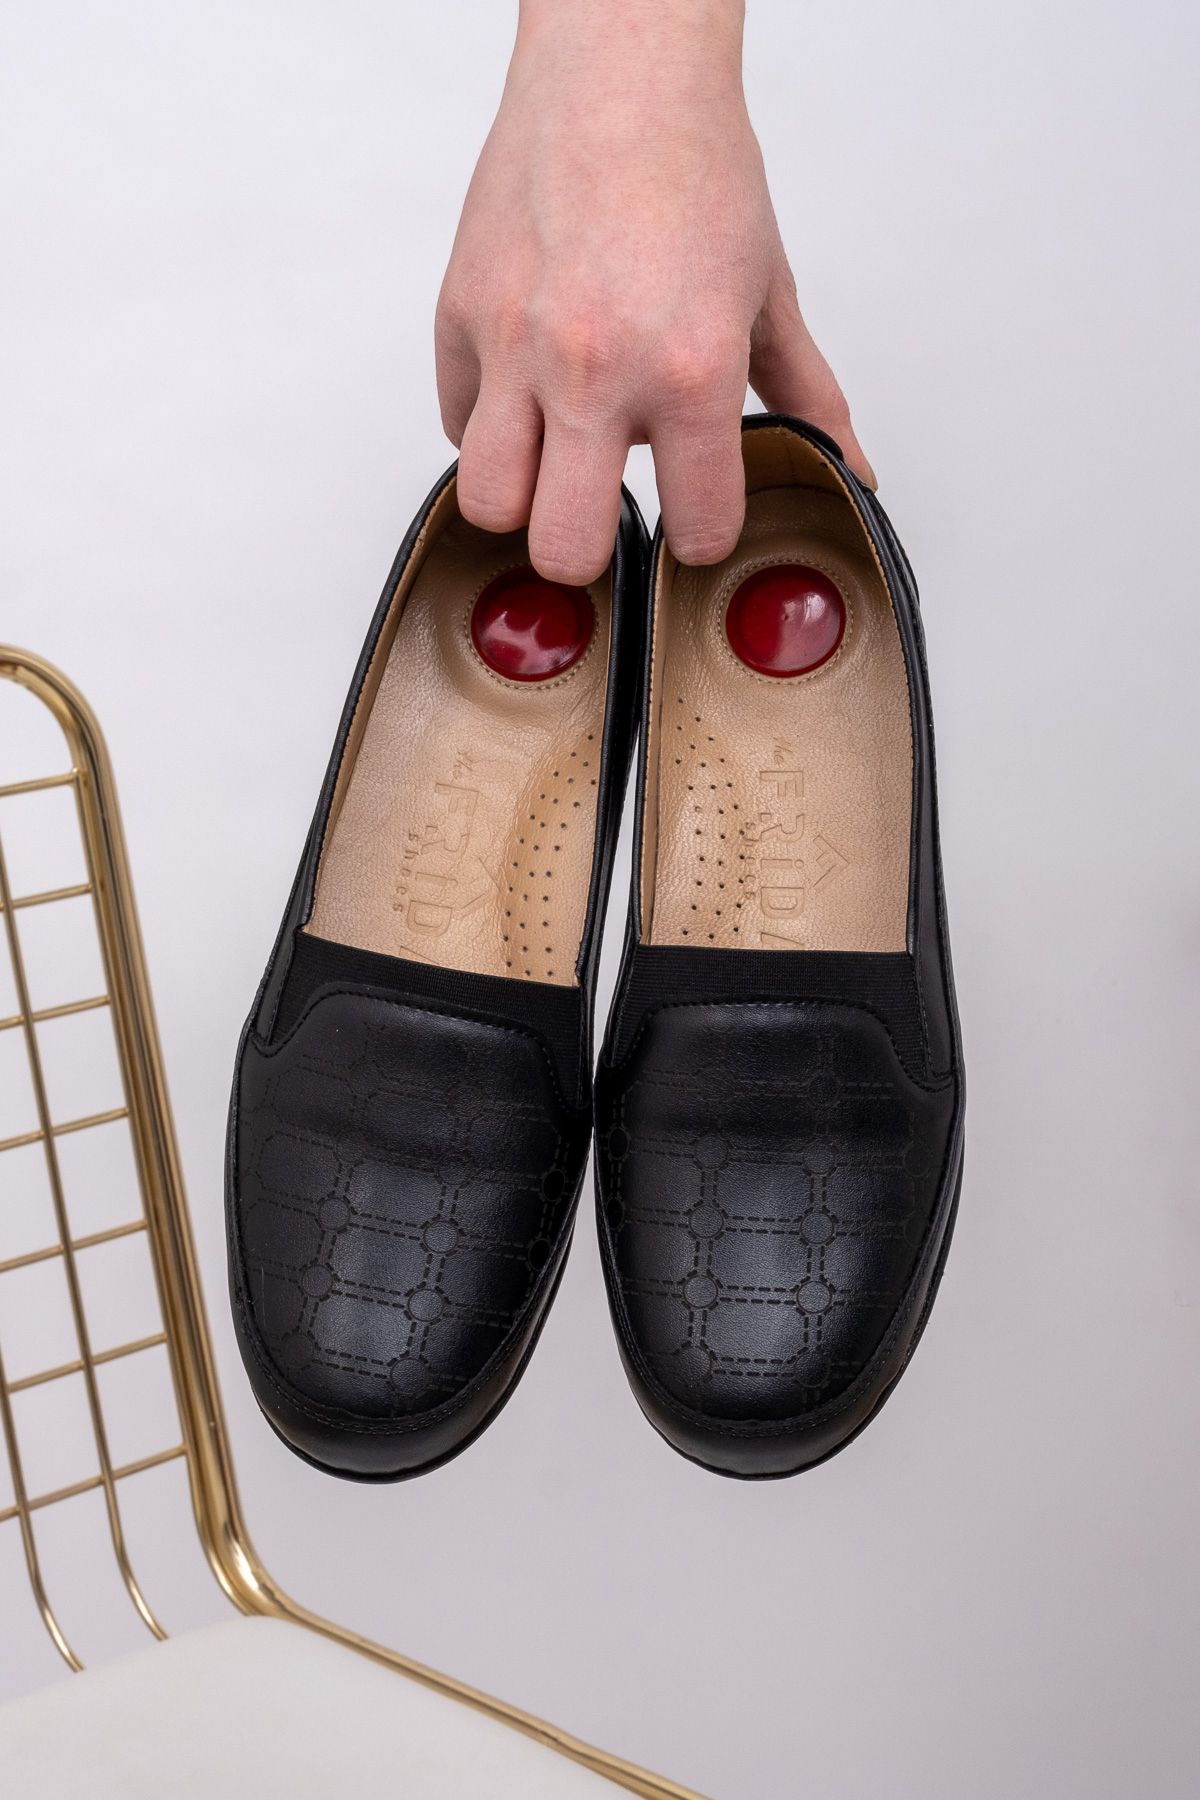 The Hope Shoes Siyah Ortopedi Deri Taban Düz Günlük Anne Ayakkabısı